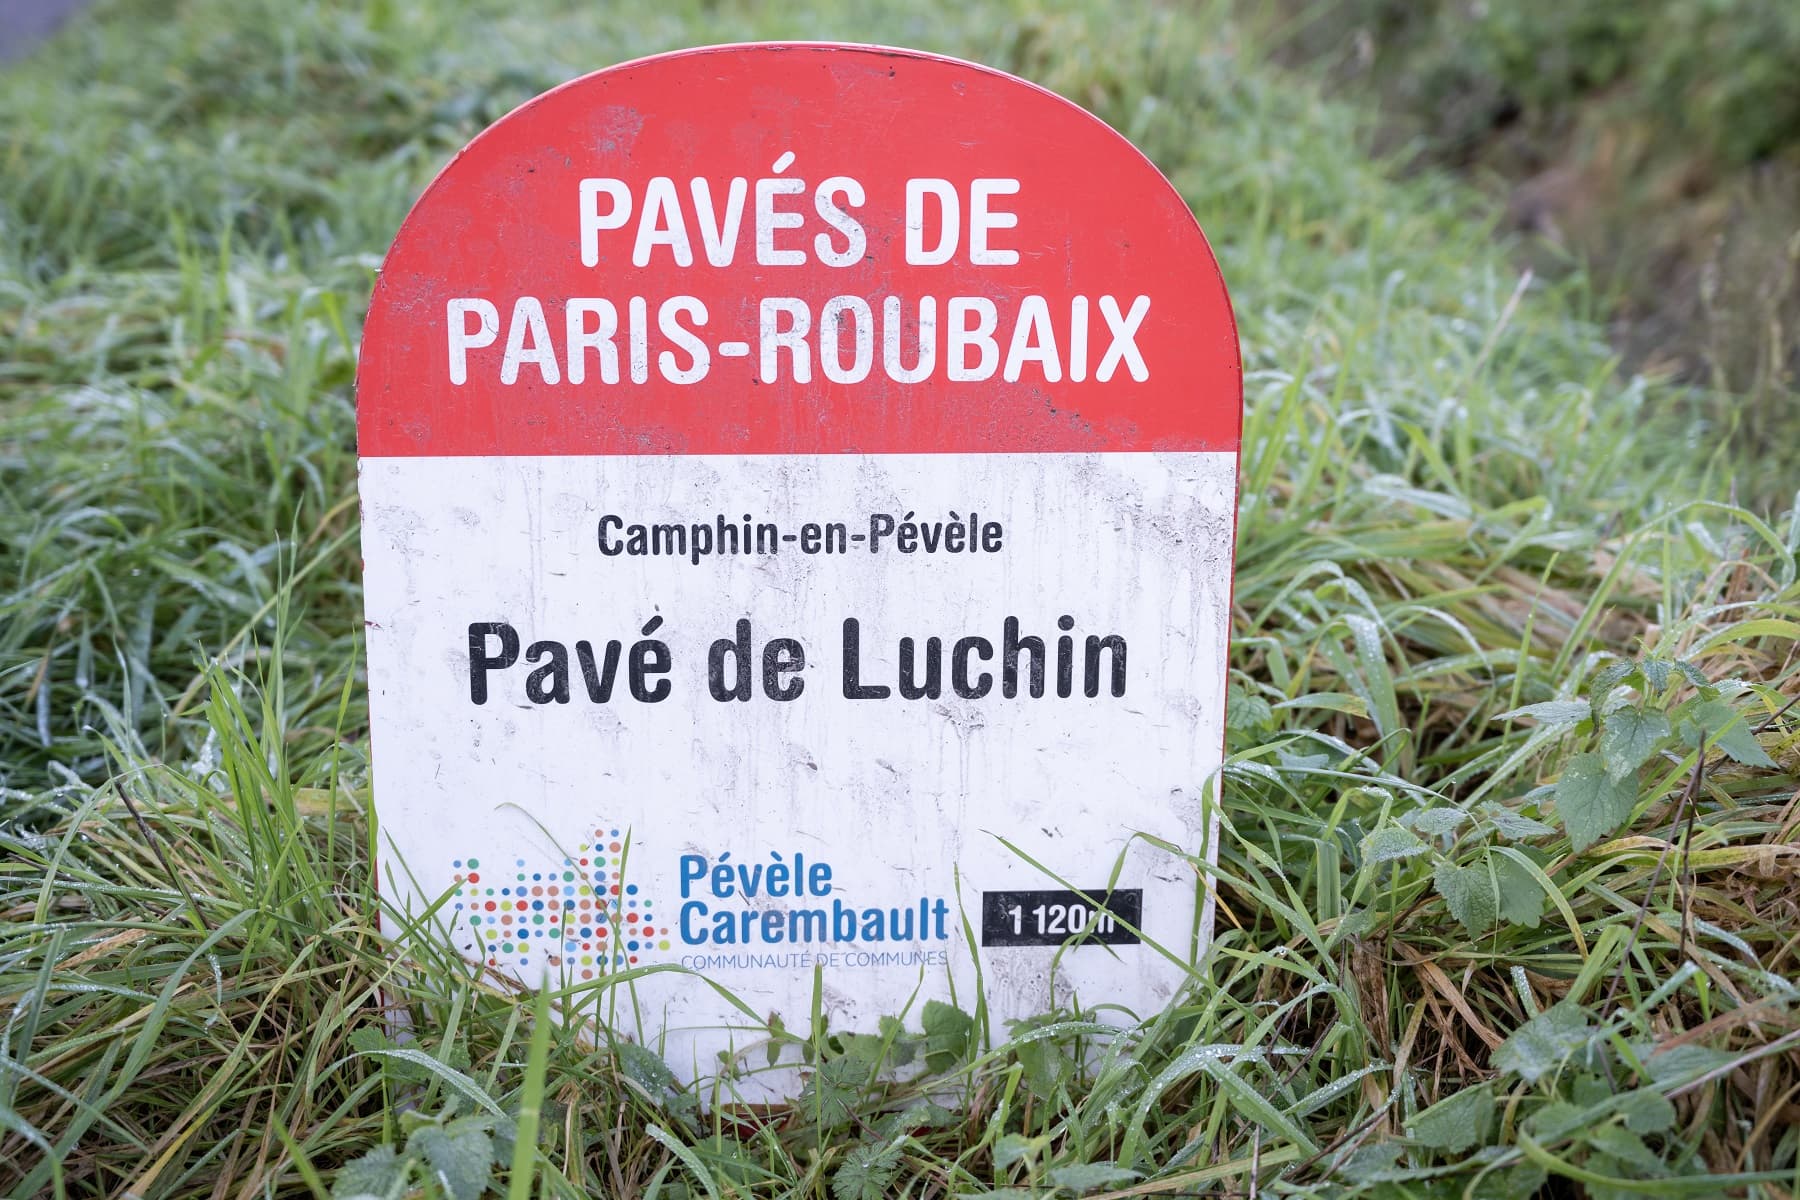 Pavés de Paris-Roubaix 